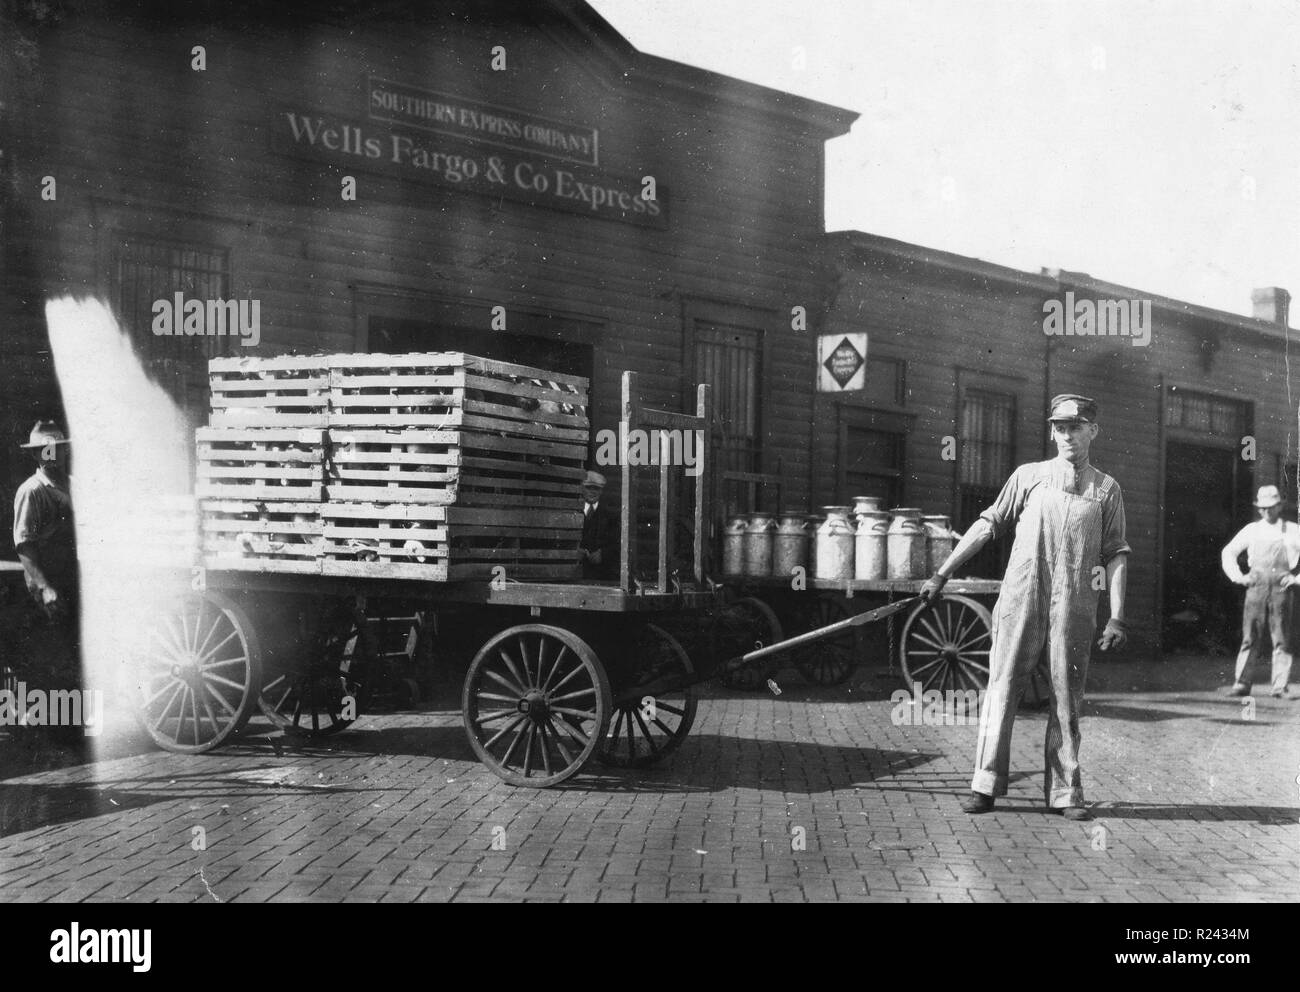 Expressmen vor einem Wells Fargo & Co Express Depot mit Karren voller Kisten und Milchkannen. Springfield, Missouri durch Lewis W. Hine. 1916 Stockfoto